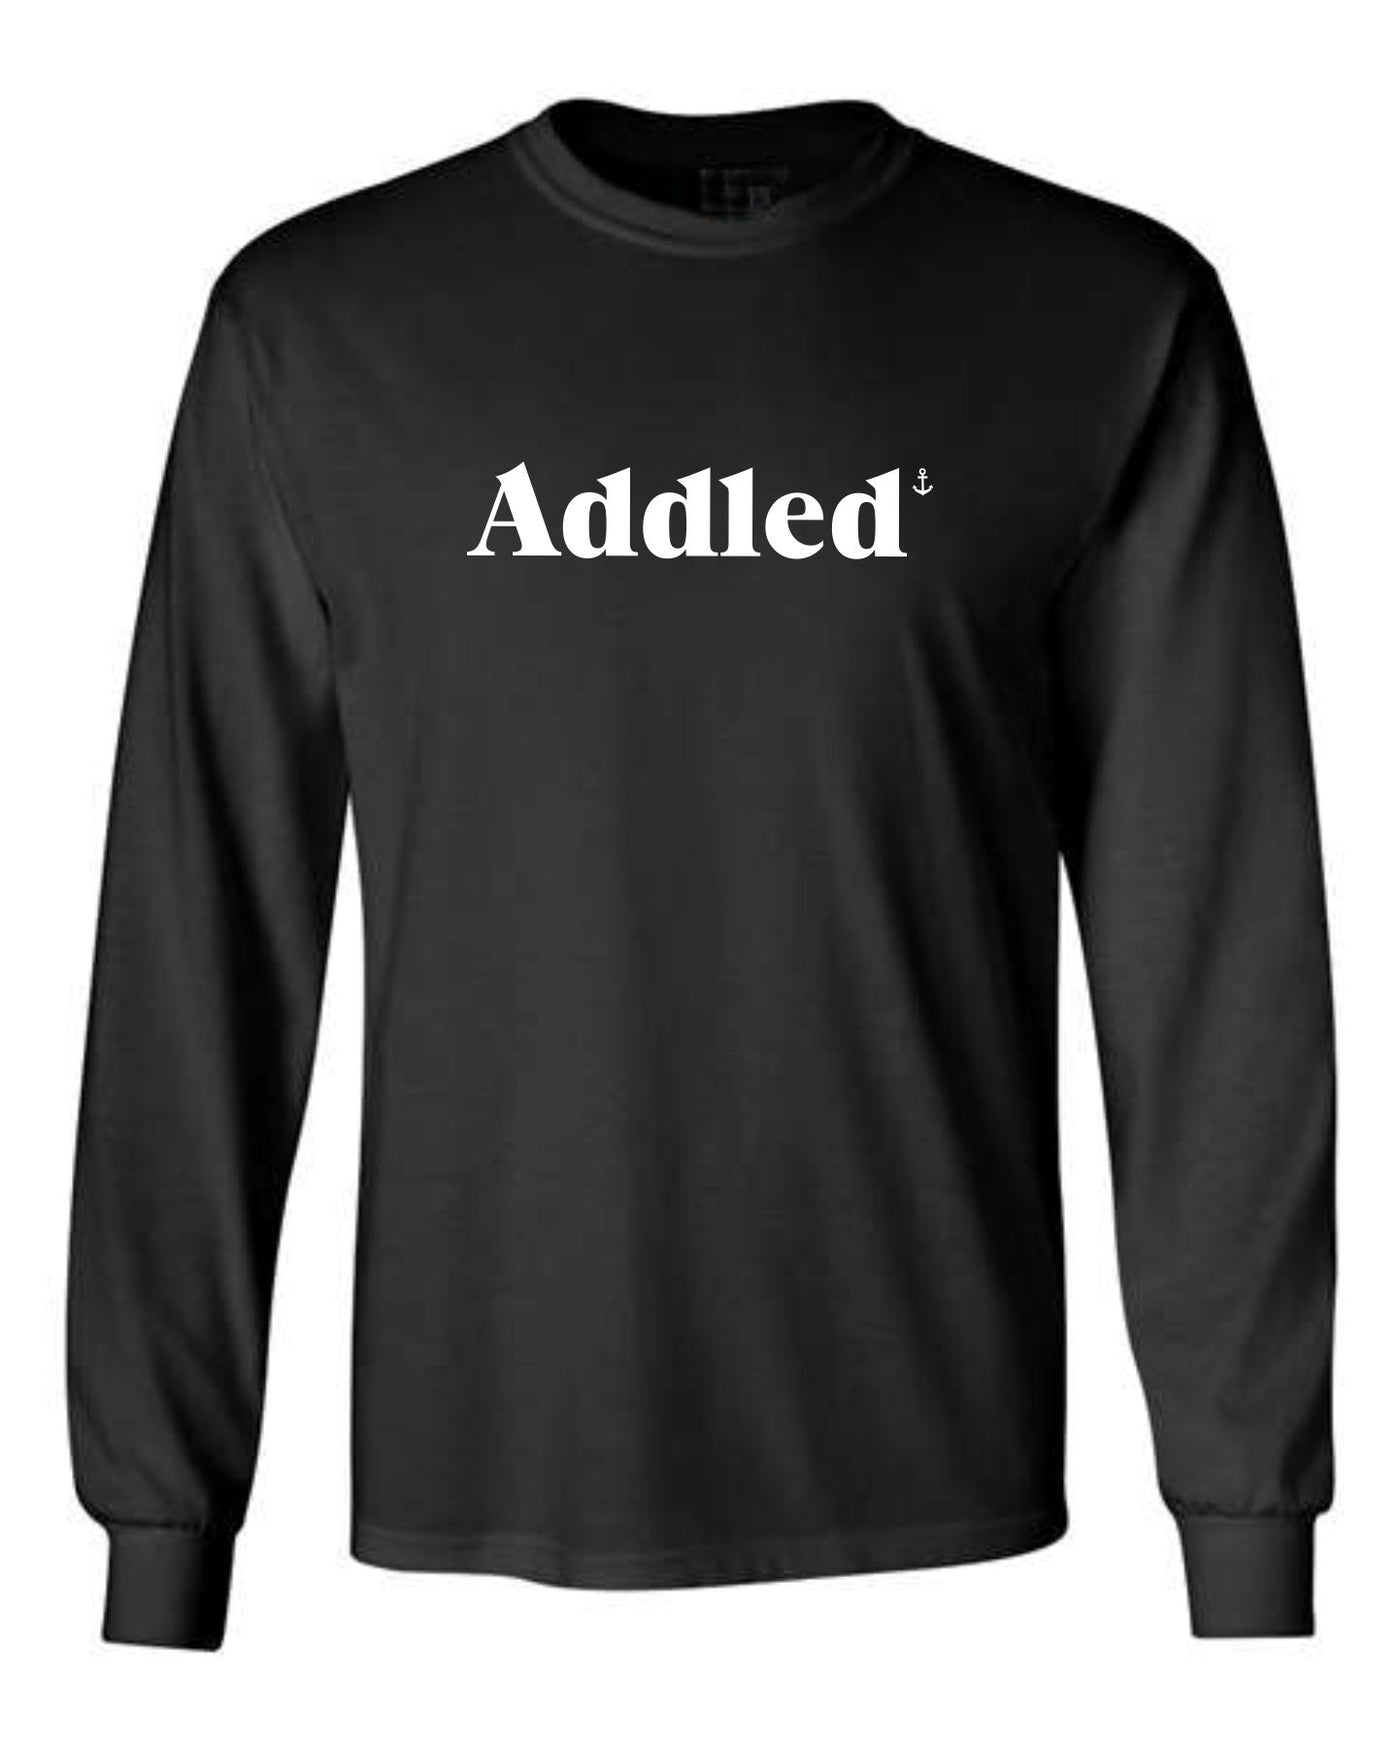 "Addled" Unisex Long Sleeve Shirt